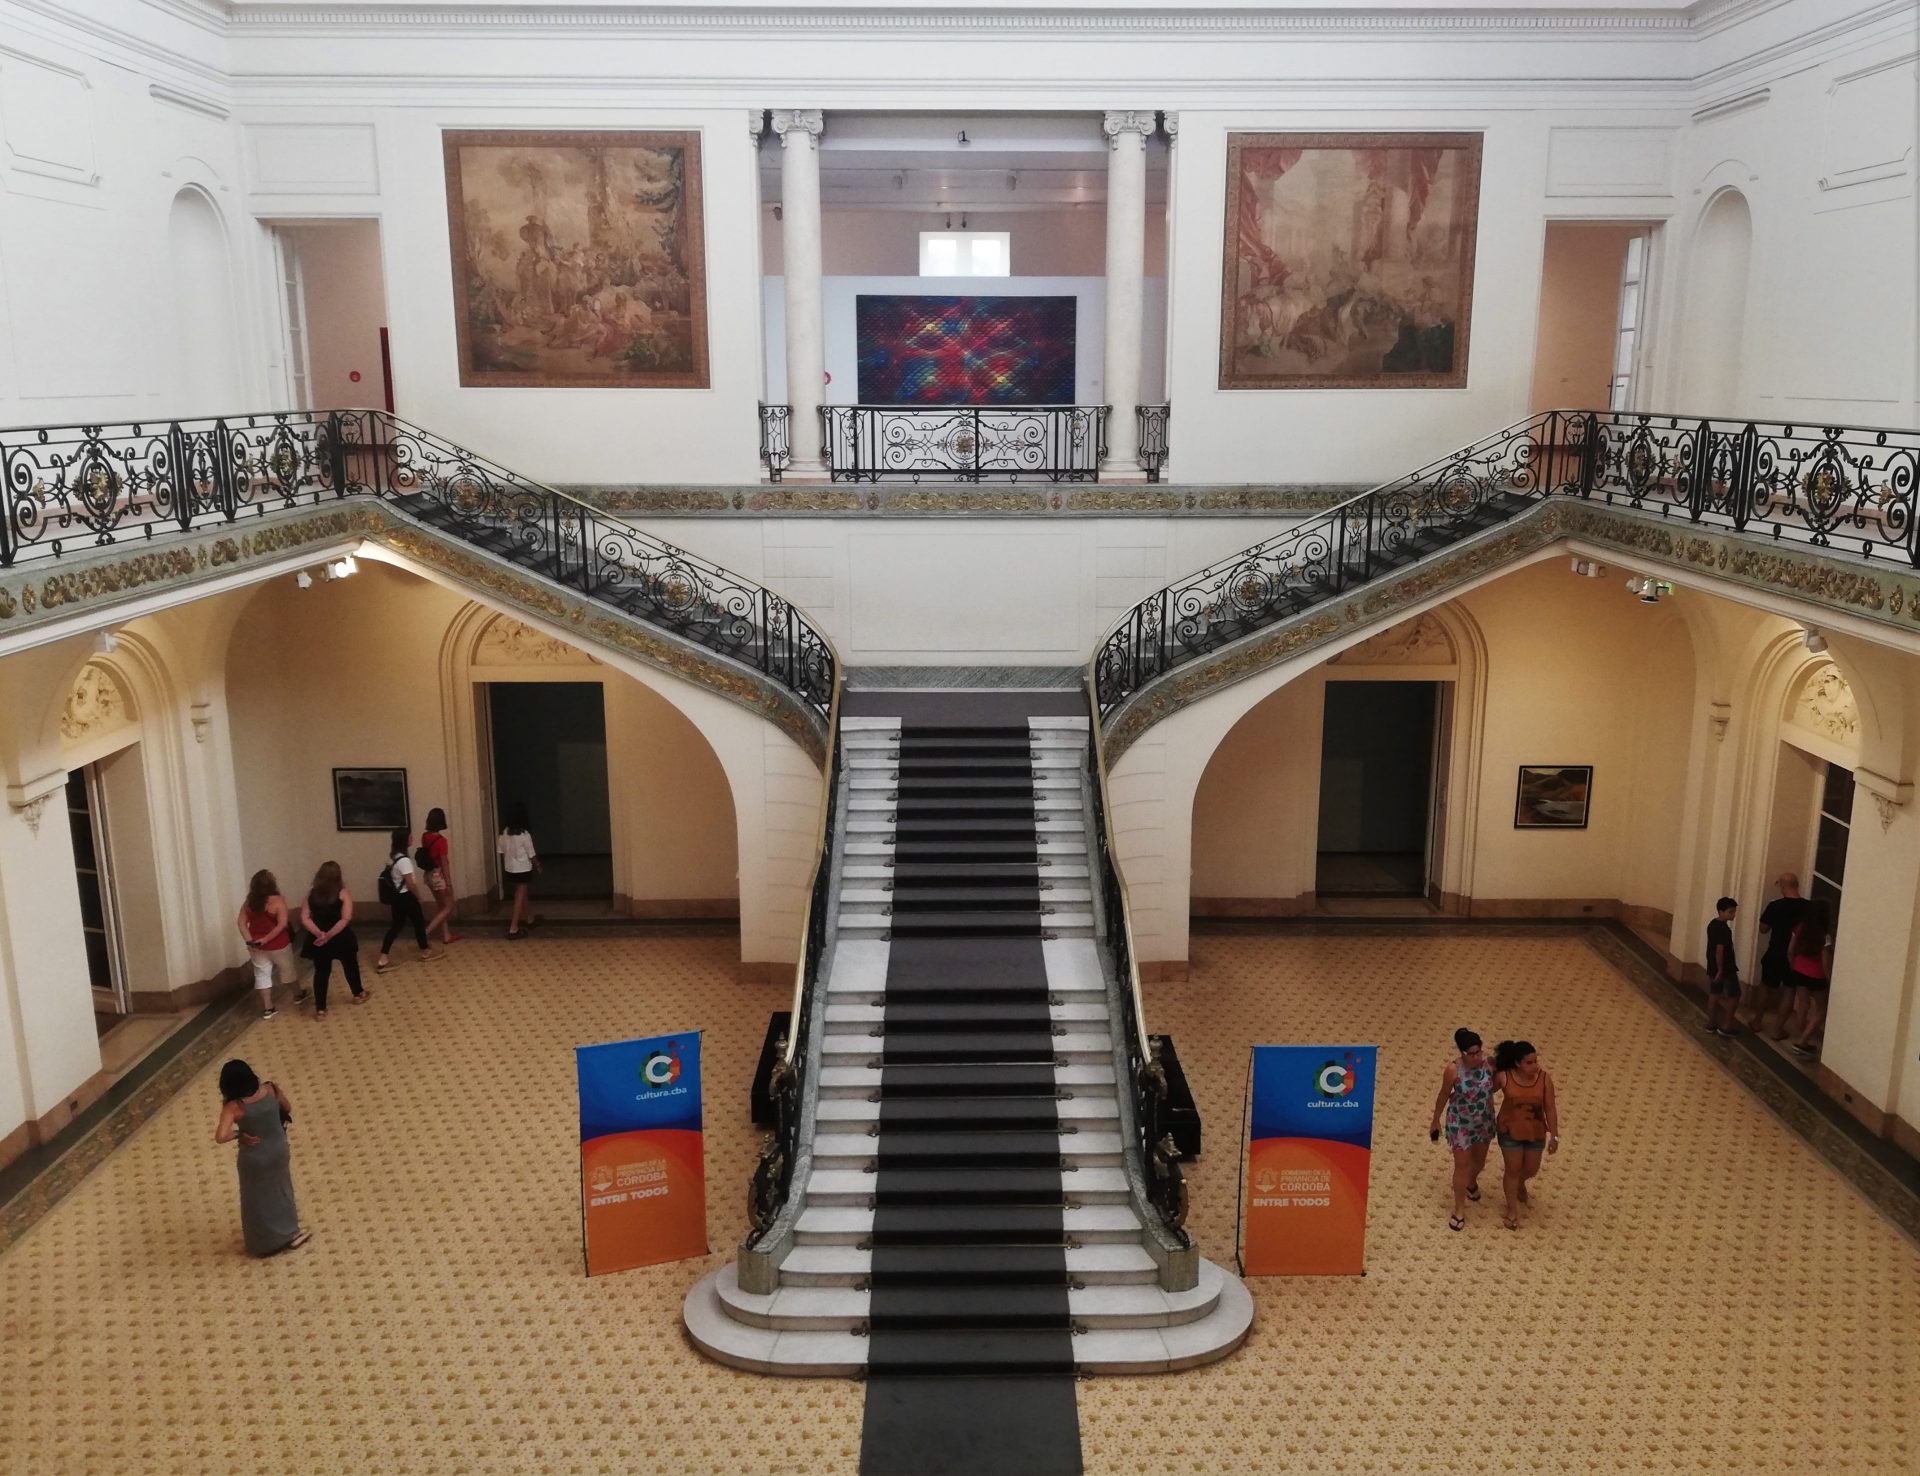 Museo Superior de Bellas Artes "Evita", uno de los museos imperdibles deCórdoba.